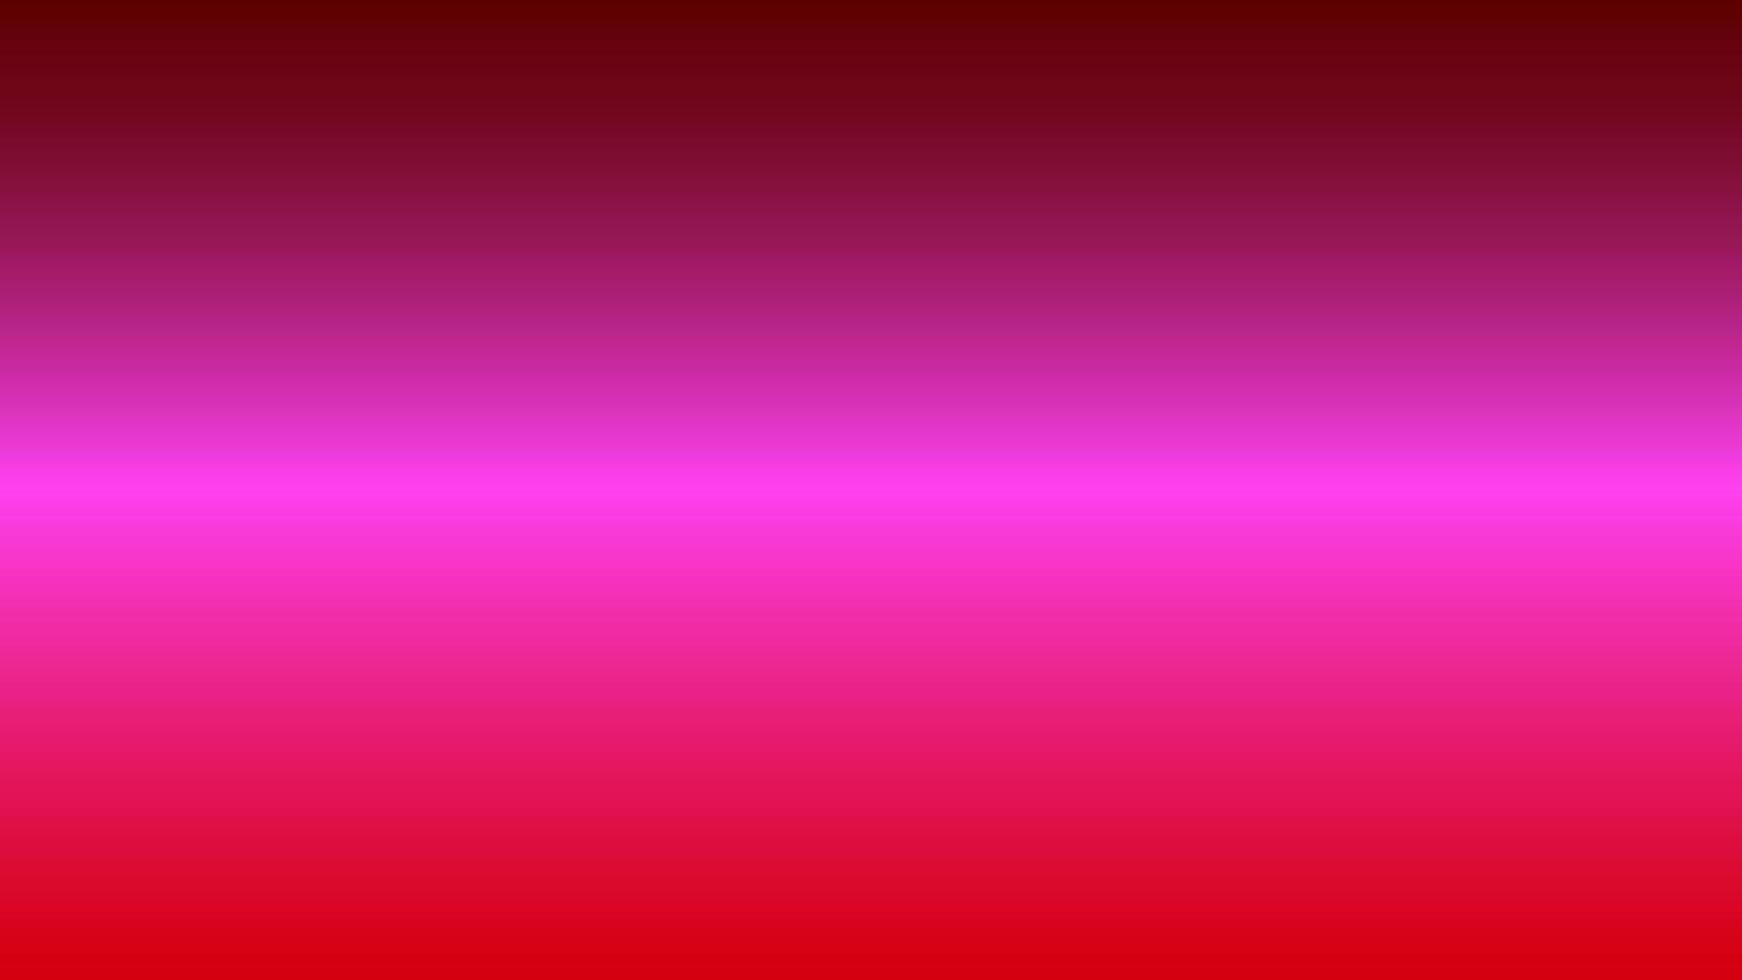 abstrakter Hintergrund mit Farbverlauf rosa und rot perfekt für Design, Tapete, Werbung, Präsentation, Website, Banner usw. Illustrationshintergrund vektor